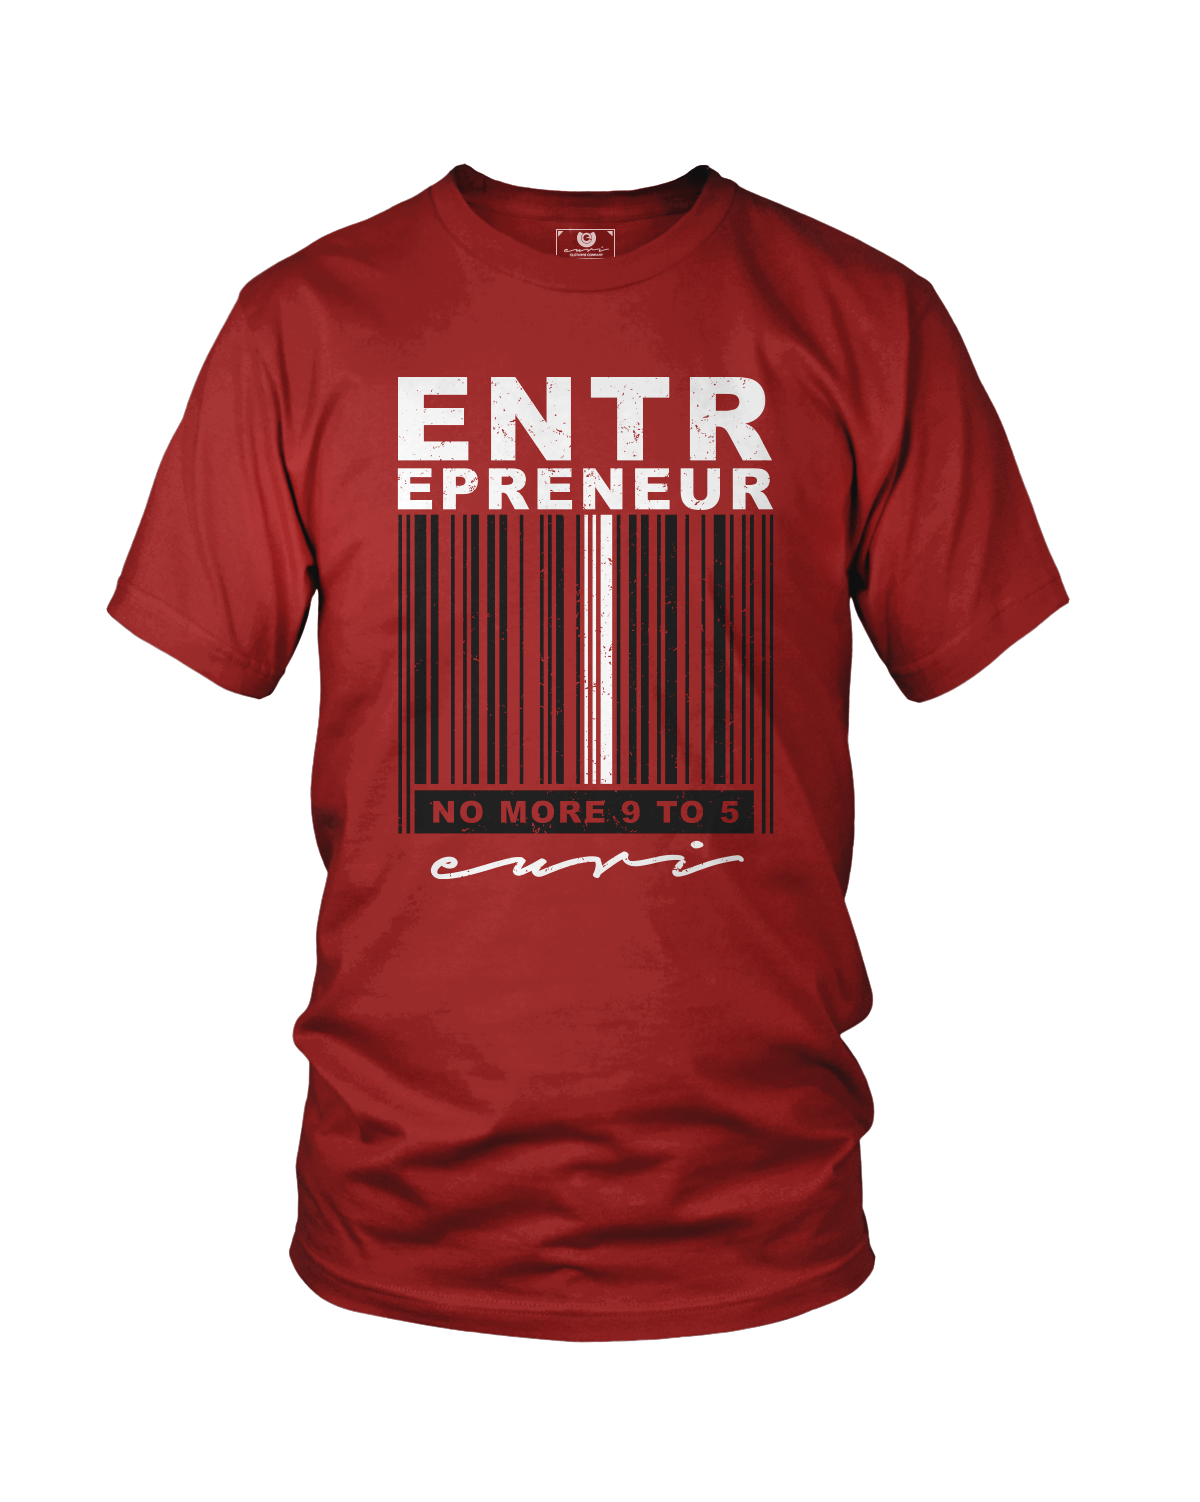 Entrepreneur Barcode - Euri Clothing